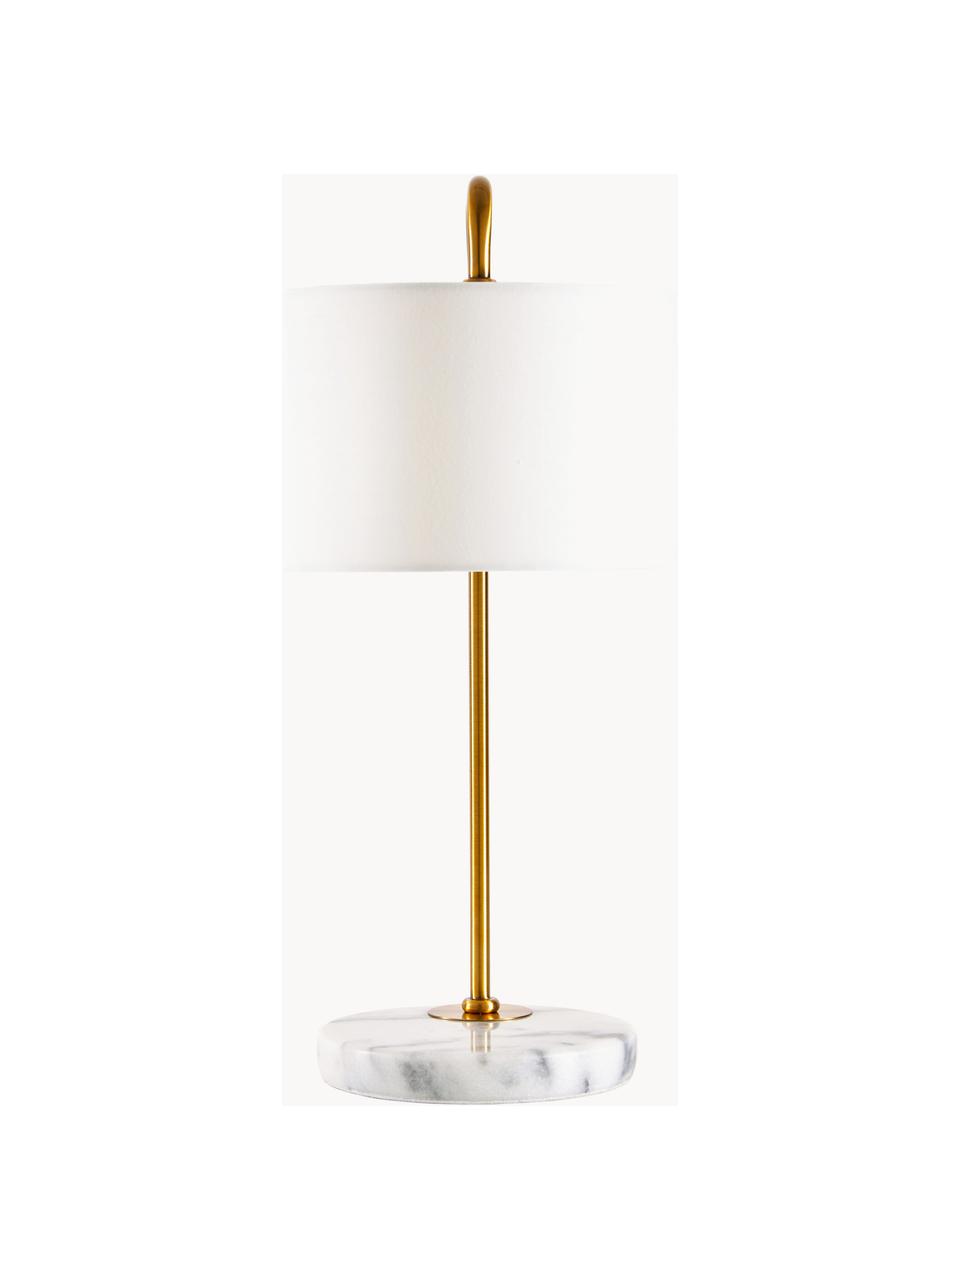 Tischlampe Montreal mit Marmorfuß, Lampenschirm: Textil, Lampenfuß: Marmor, Gestell: Metall, galvanisiert, Goldfarben, Weiß, marmoriert, B 32 x H 49 cm